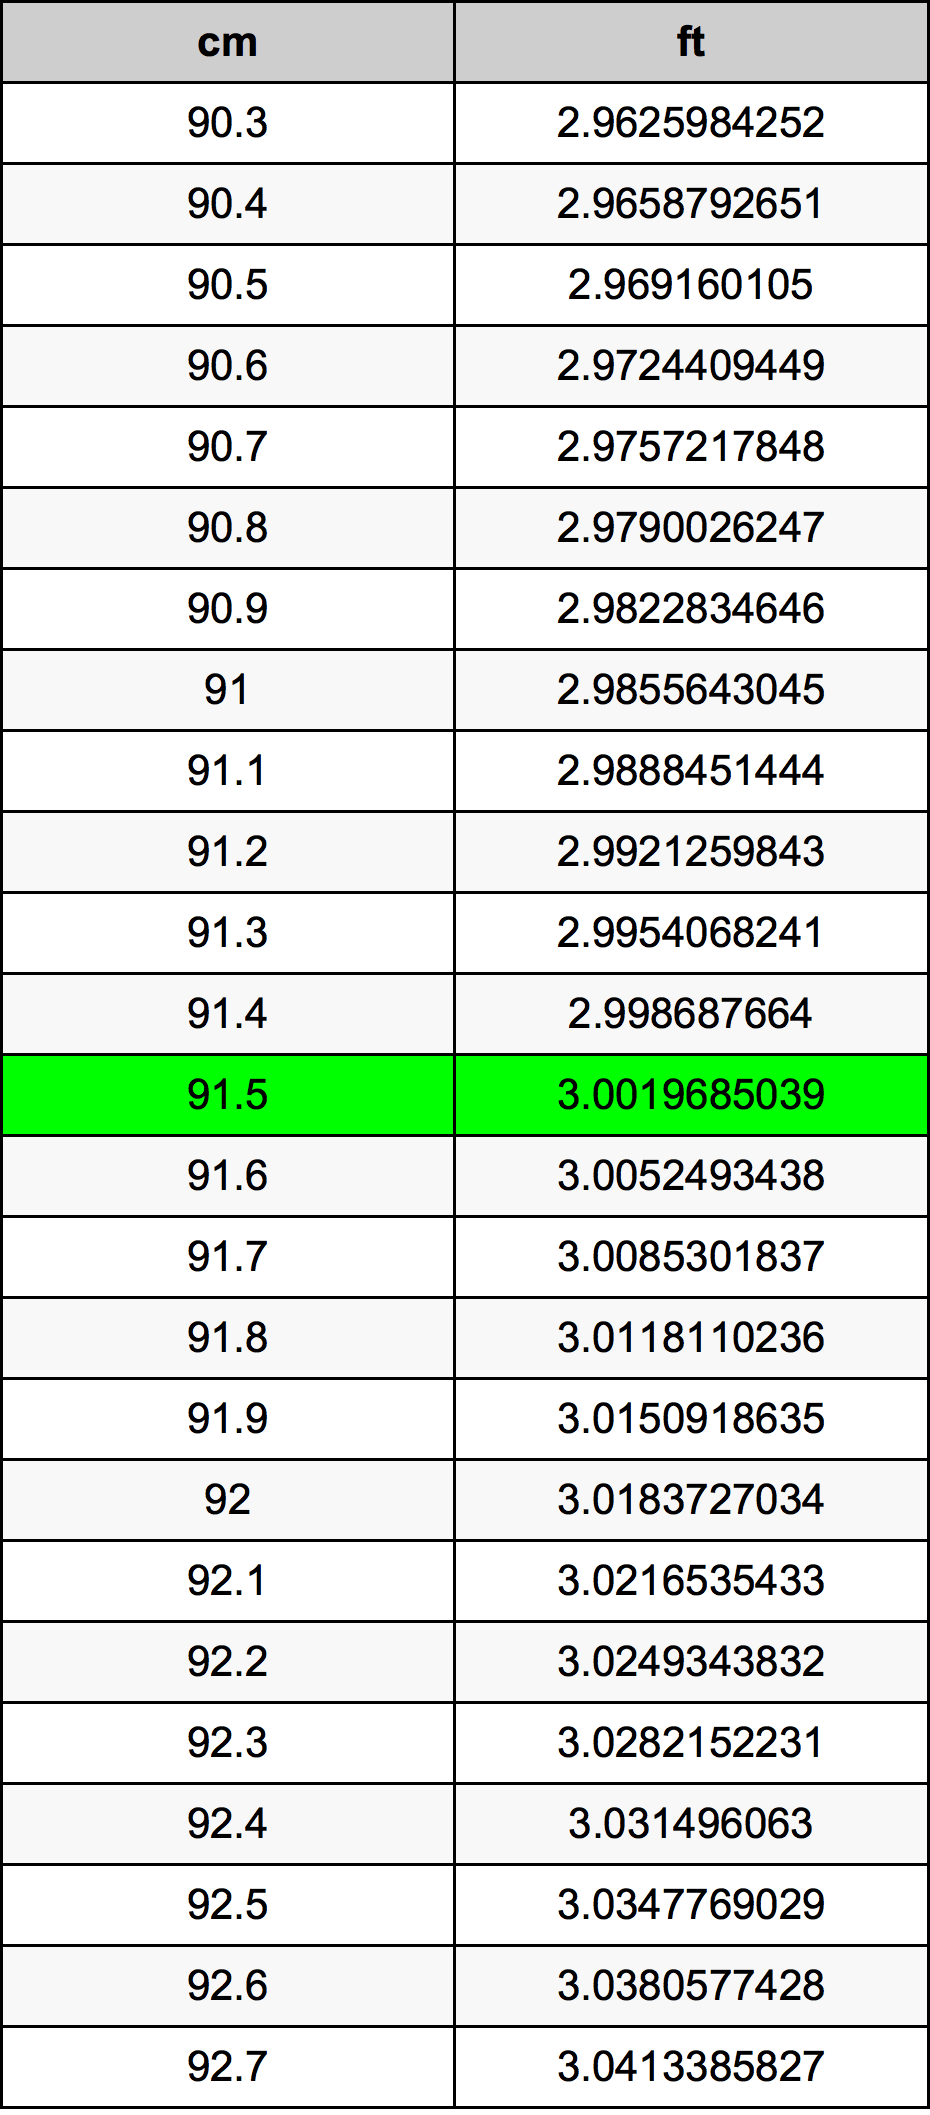 91.5 Centiméter átszámítási táblázat